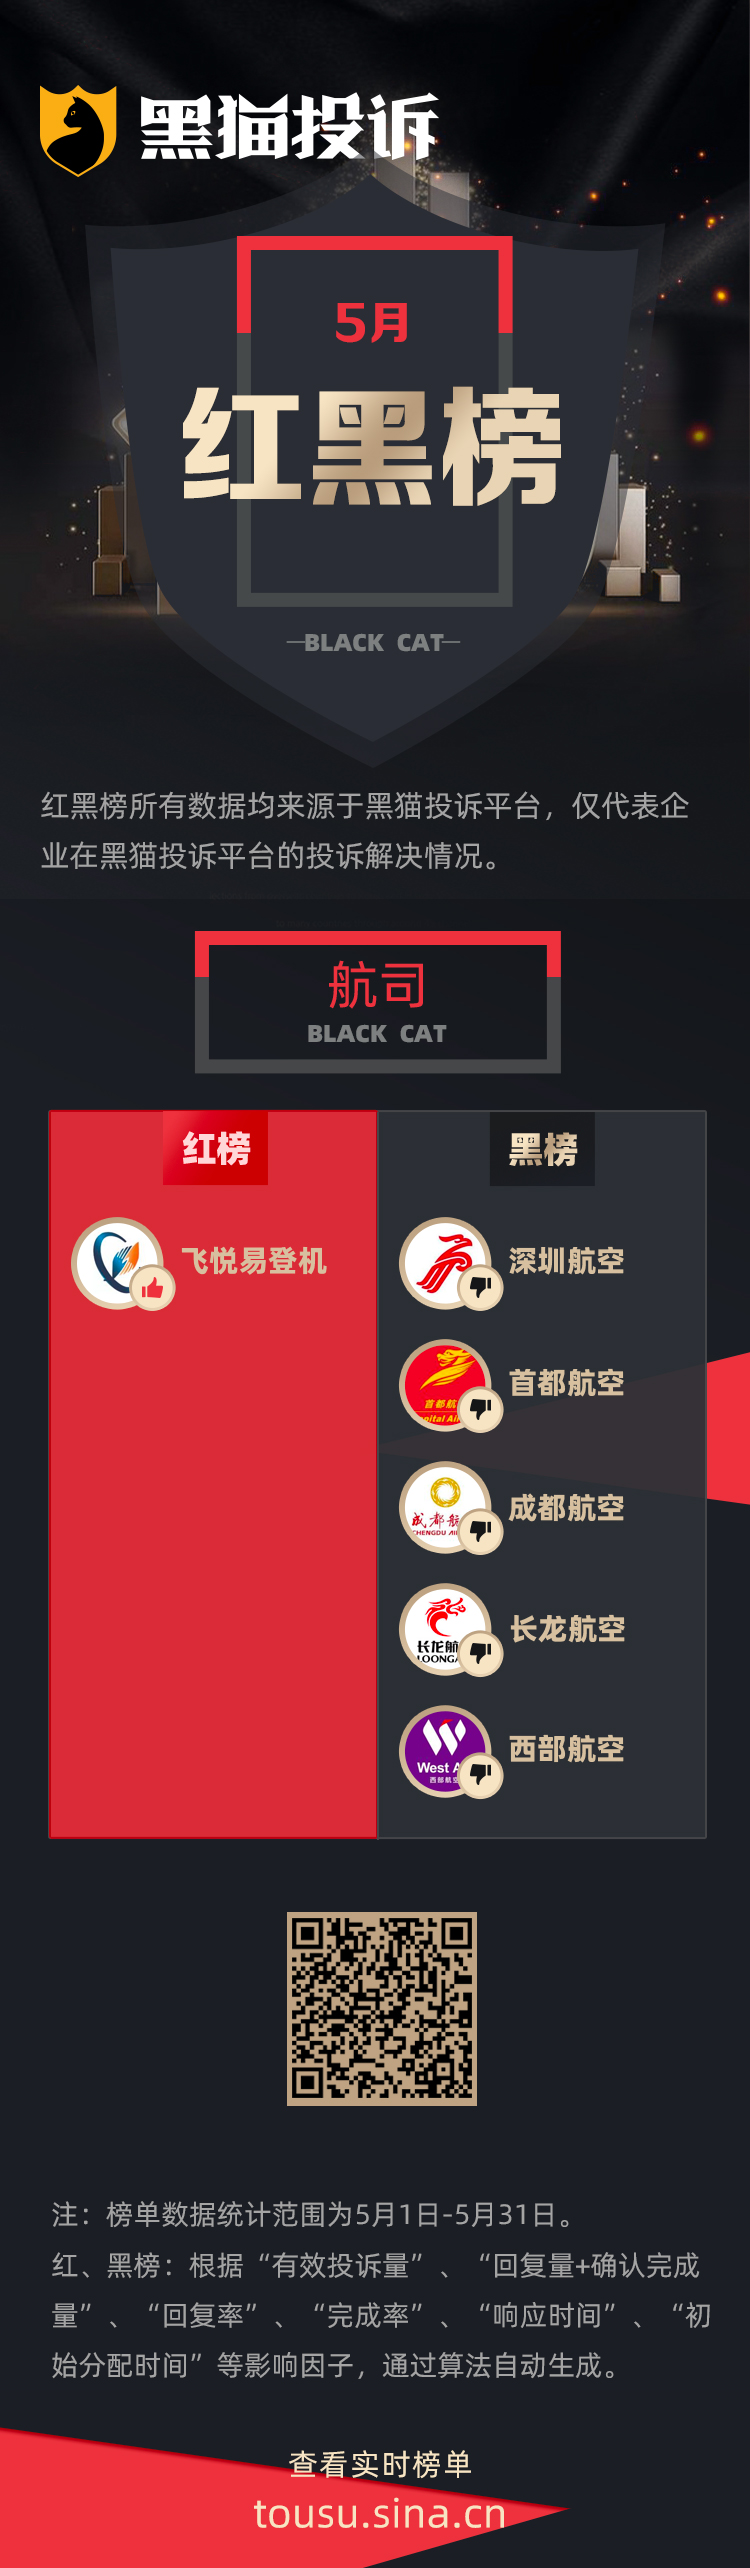 5月黑猫投诉航司领域红黑榜：深圳航空无故多次改签乘客票务  第1张